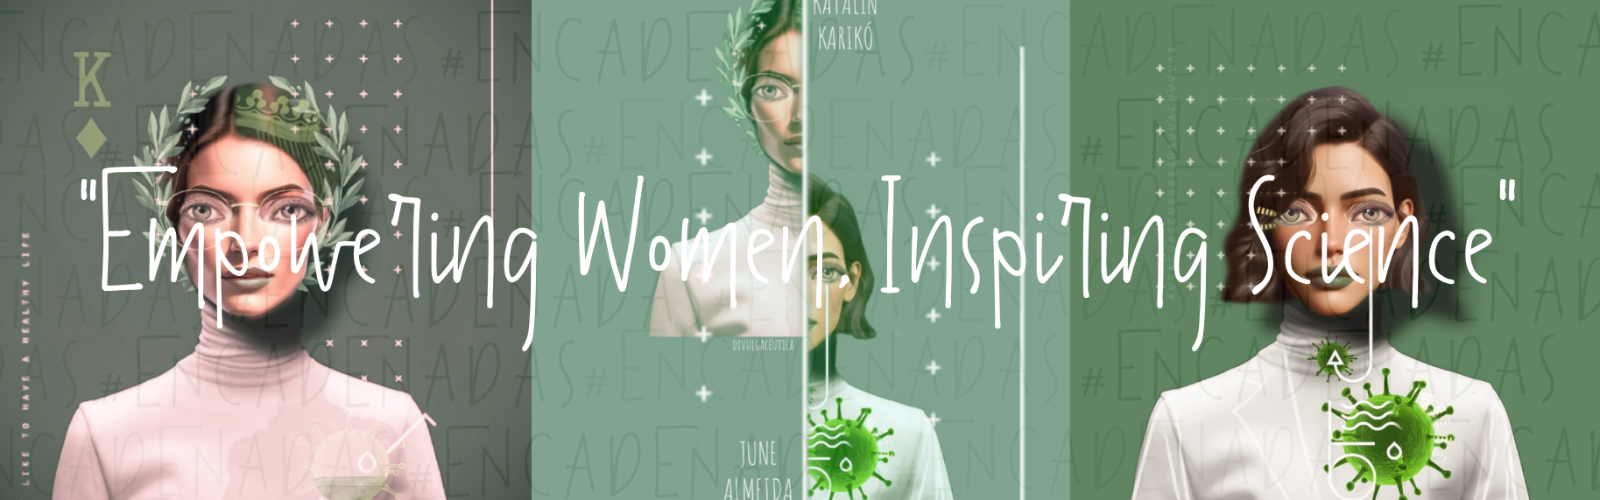 Encadenadas, la campaña ilustrativa de la UMU para poner en valor a las mujeres científicas por el 11F